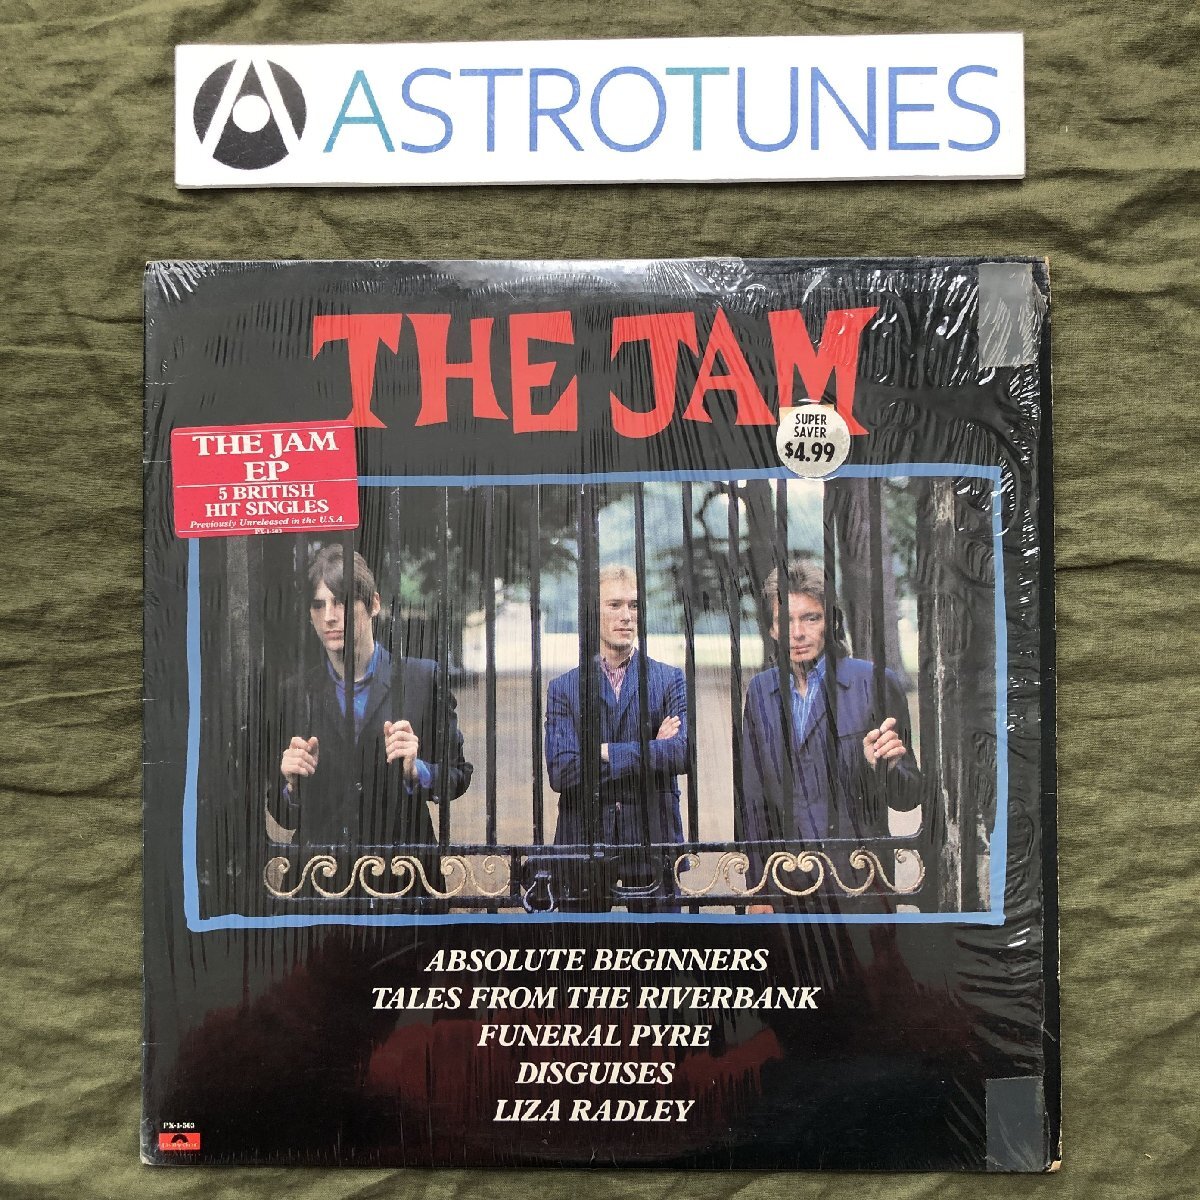 良盤 激レア 1981年 米国盤 オリジナルリリース盤 ザ・ジャム The Jam LPレコード S/T パンク ニューウェーブ Paul Weller: Funeral Pyre_画像1